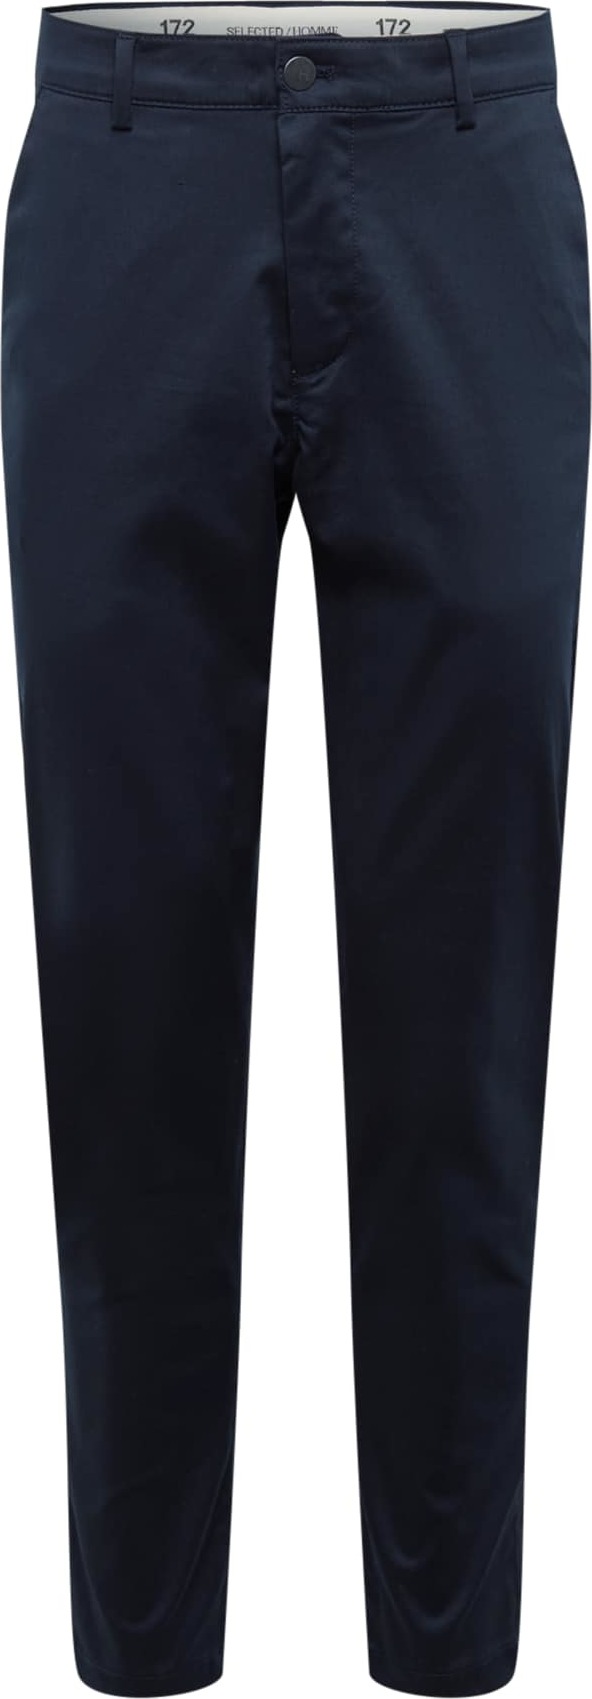 SELECTED HOMME Chino kalhoty 'Repton' námořnická modř